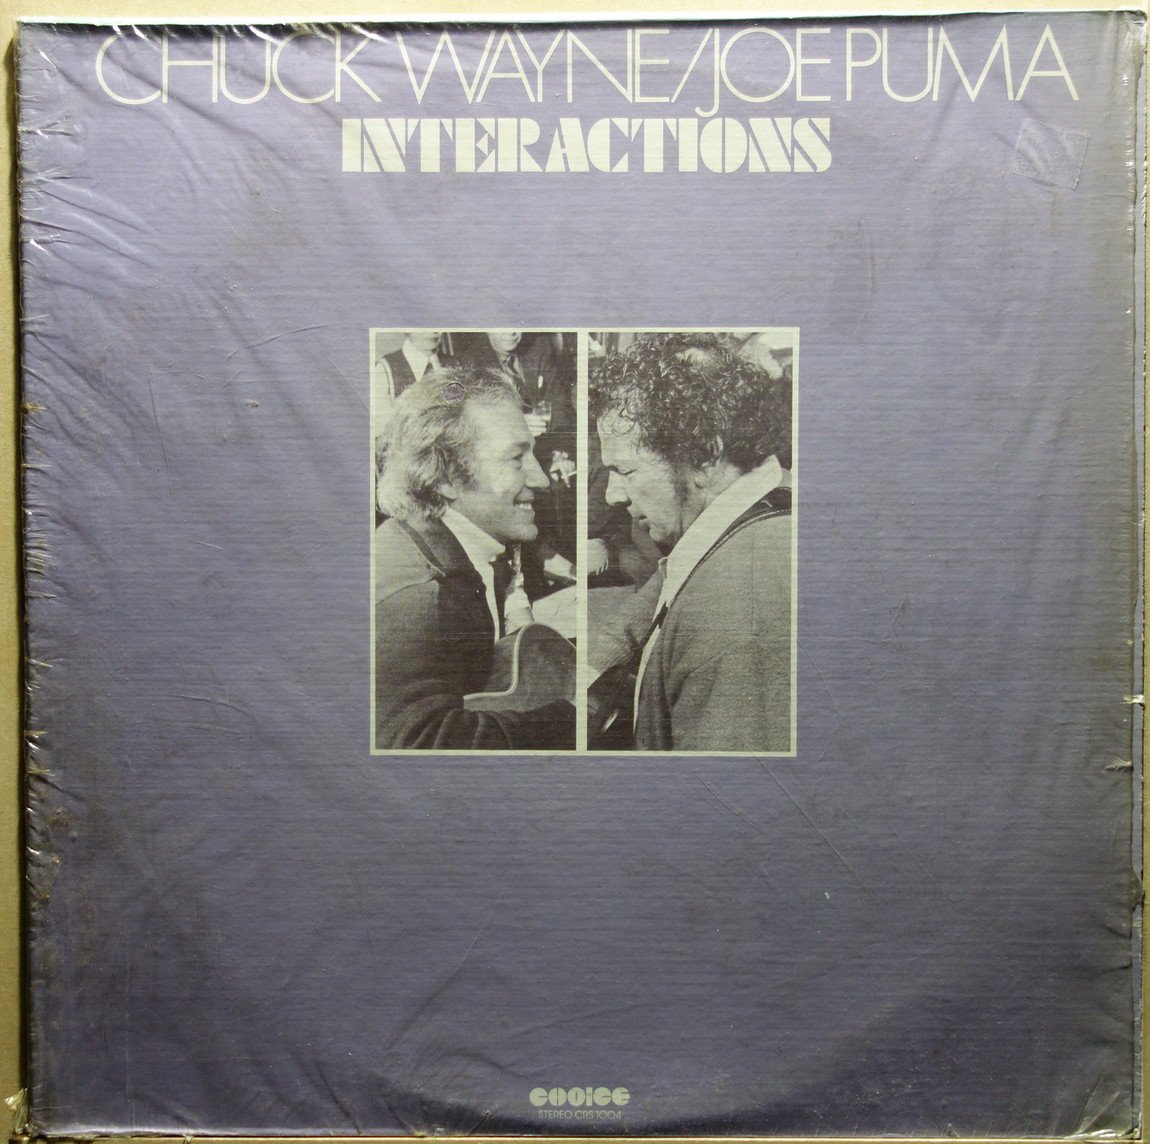 Chuck Wayne / Joe Puma - Interactions - Vinylian - Vintage Vinyl Record Shop